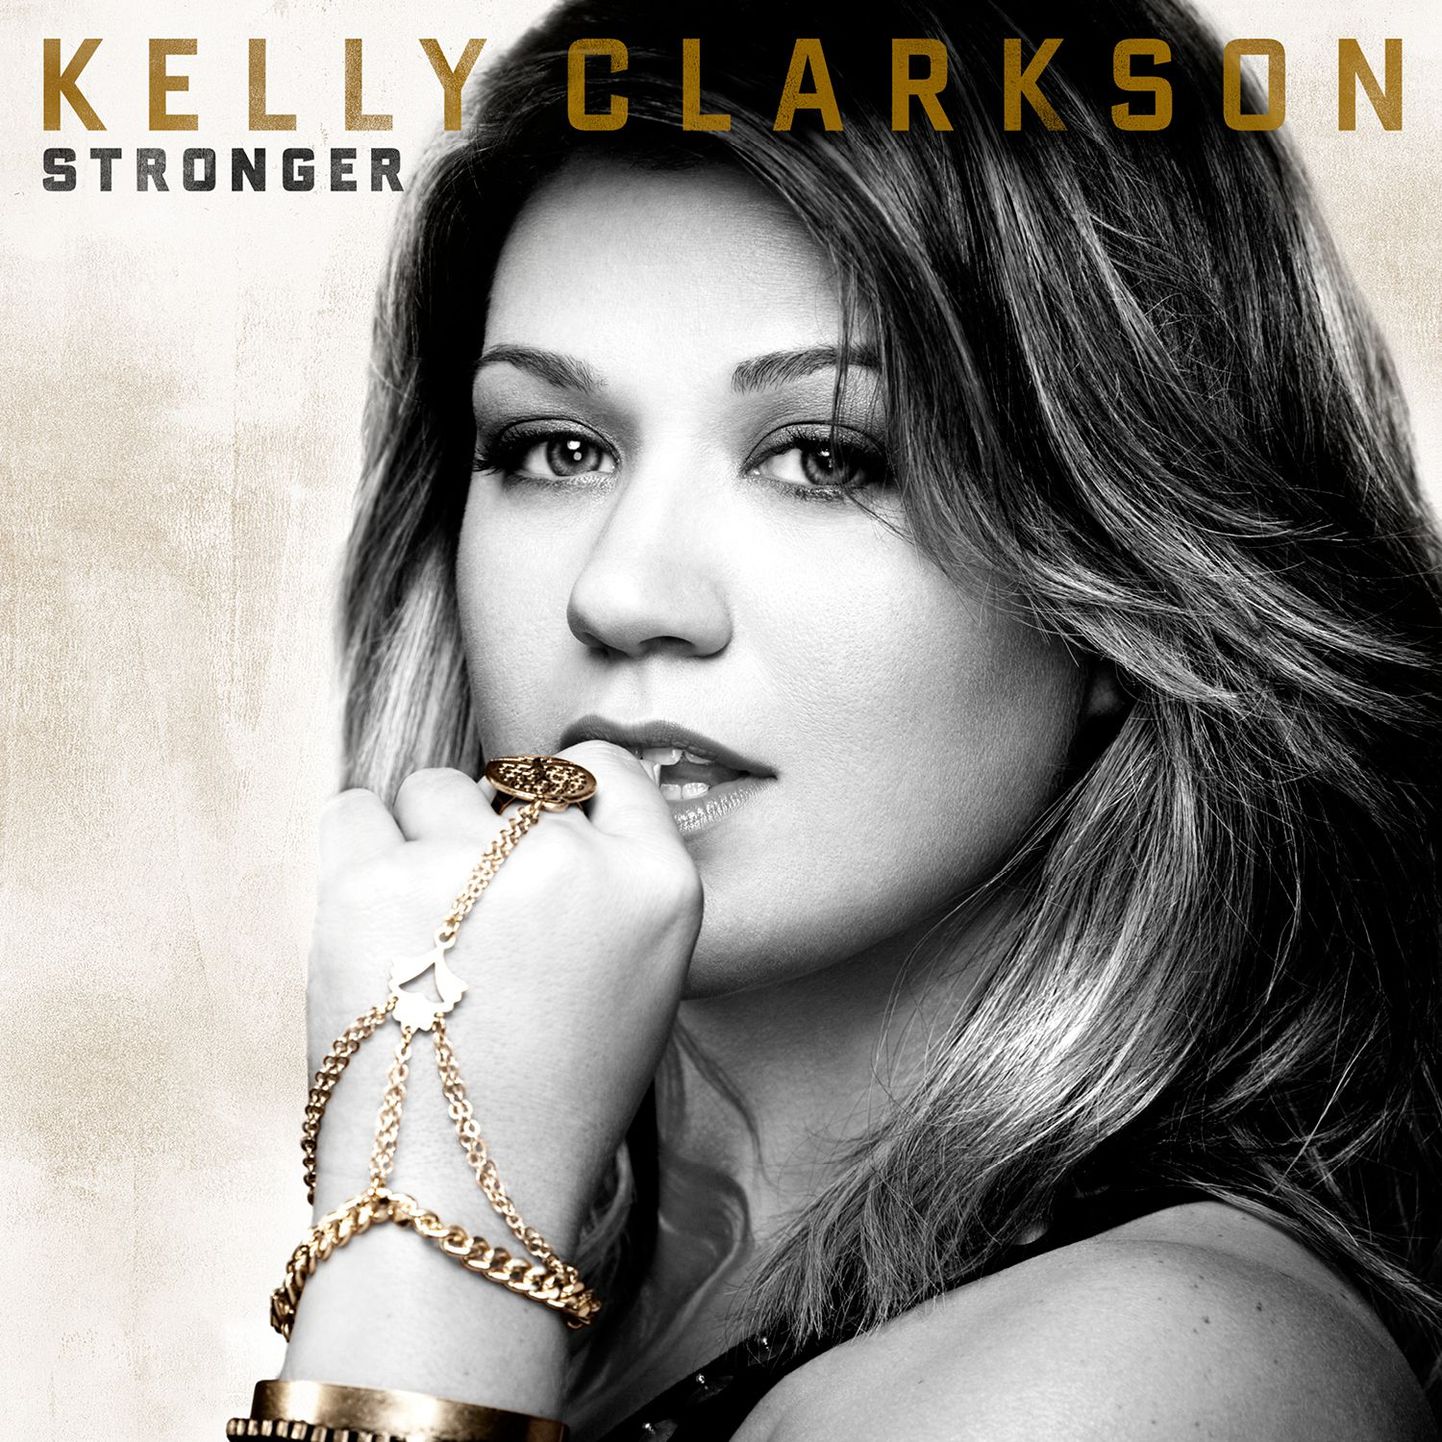 Kelly Clarkson "Stronger"